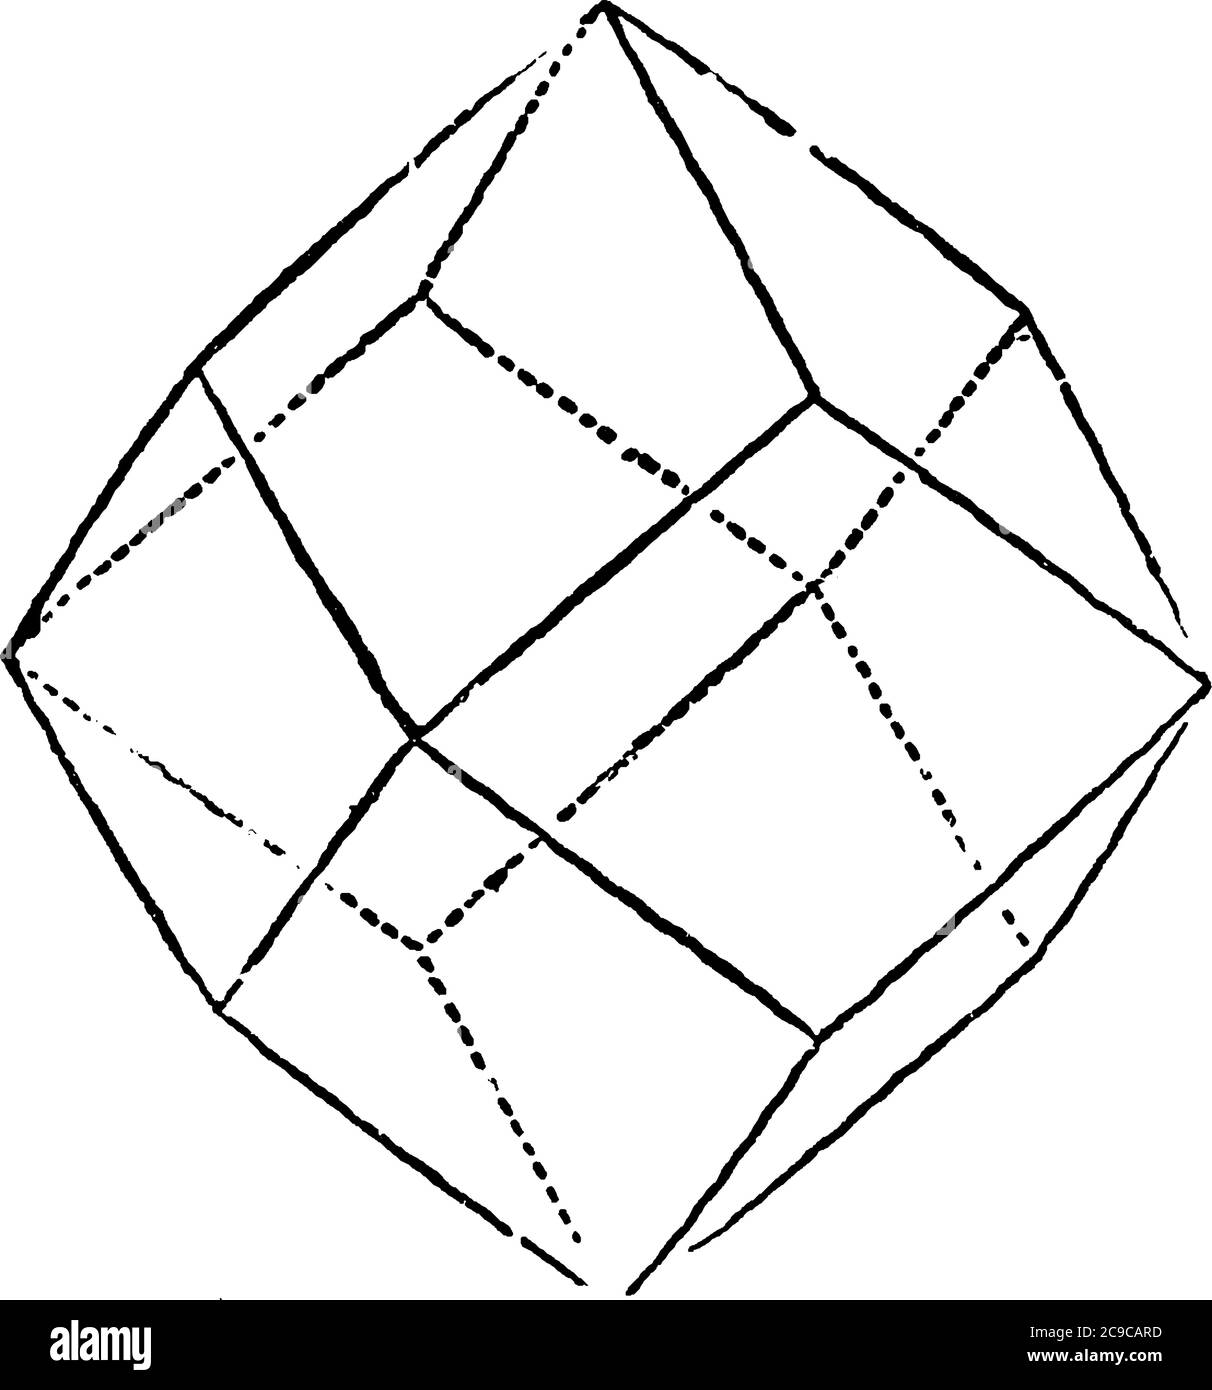 Una rappresentazione tipica del dodecaedro rombico, una forma geometrica che ha dodici facce, disegno di linee vintage o illustrazione di incisione. Illustrazione Vettoriale